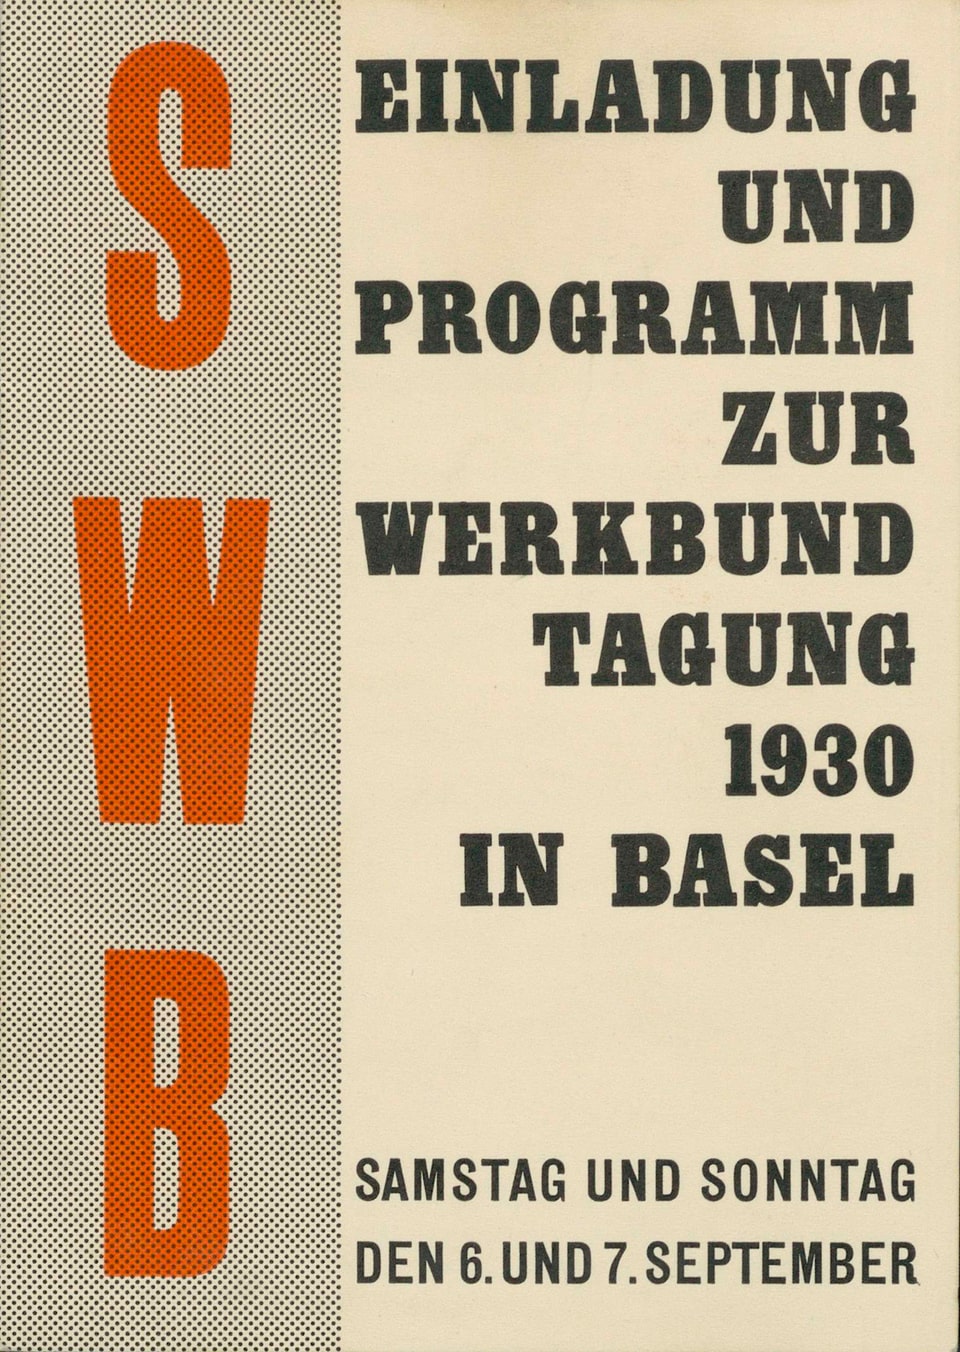 Programm und Einladung für die Werkbundtagung in Basel.